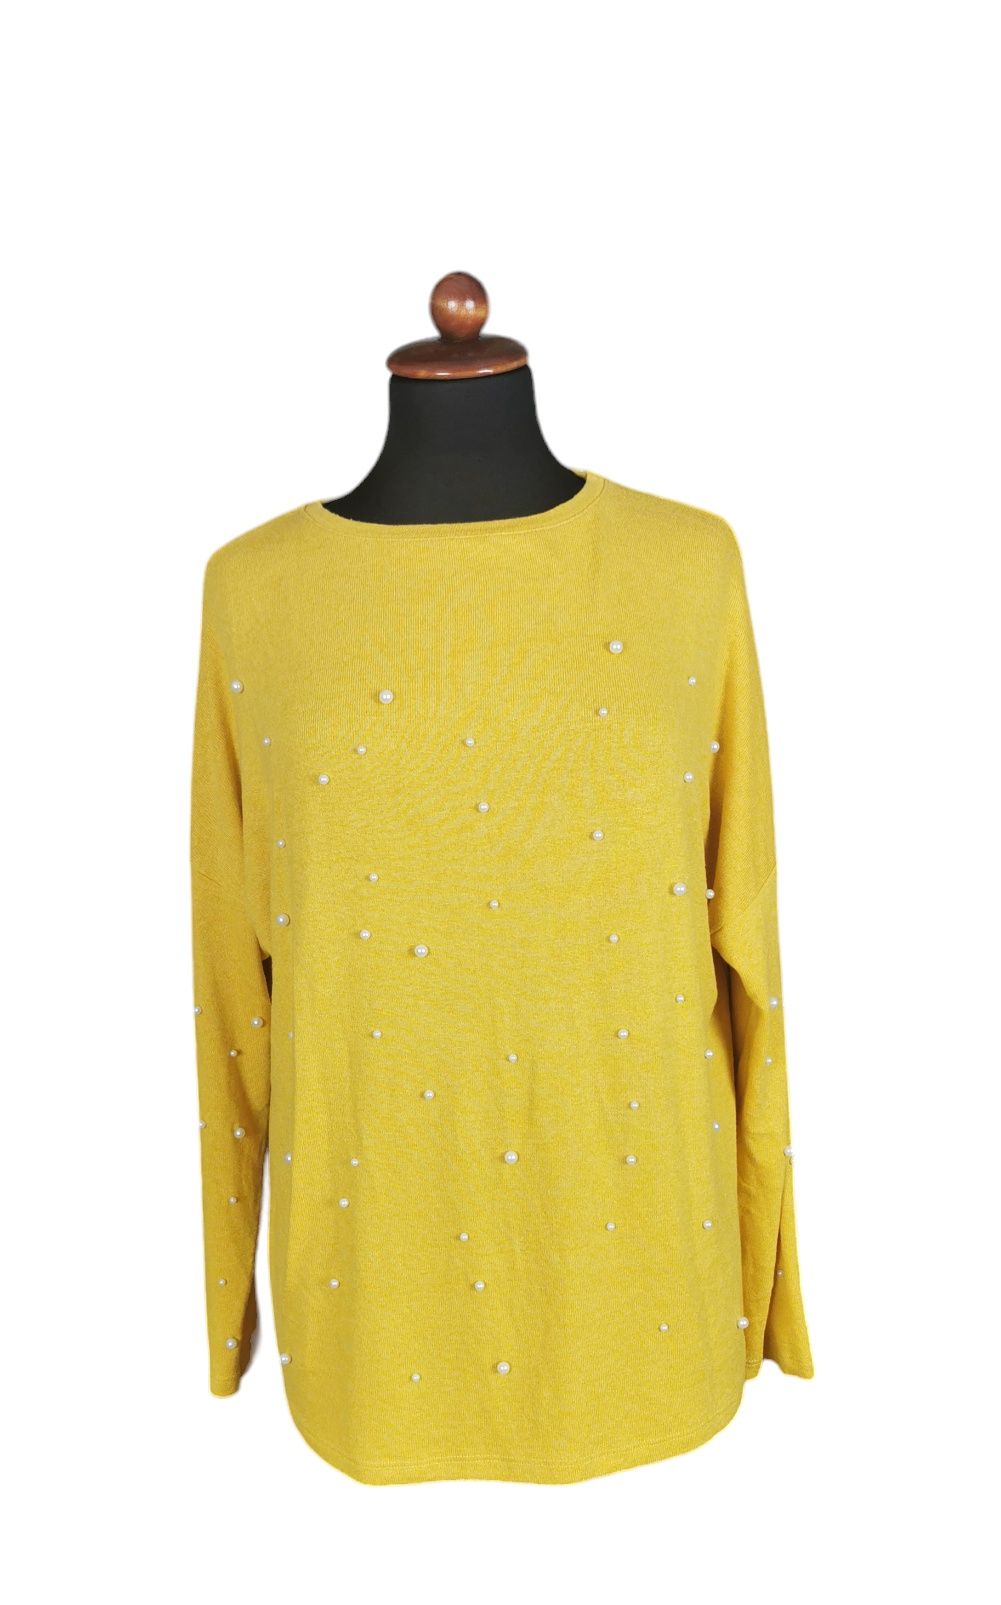 Sweterek żółty perełki Amisu New Yorker r.S 36